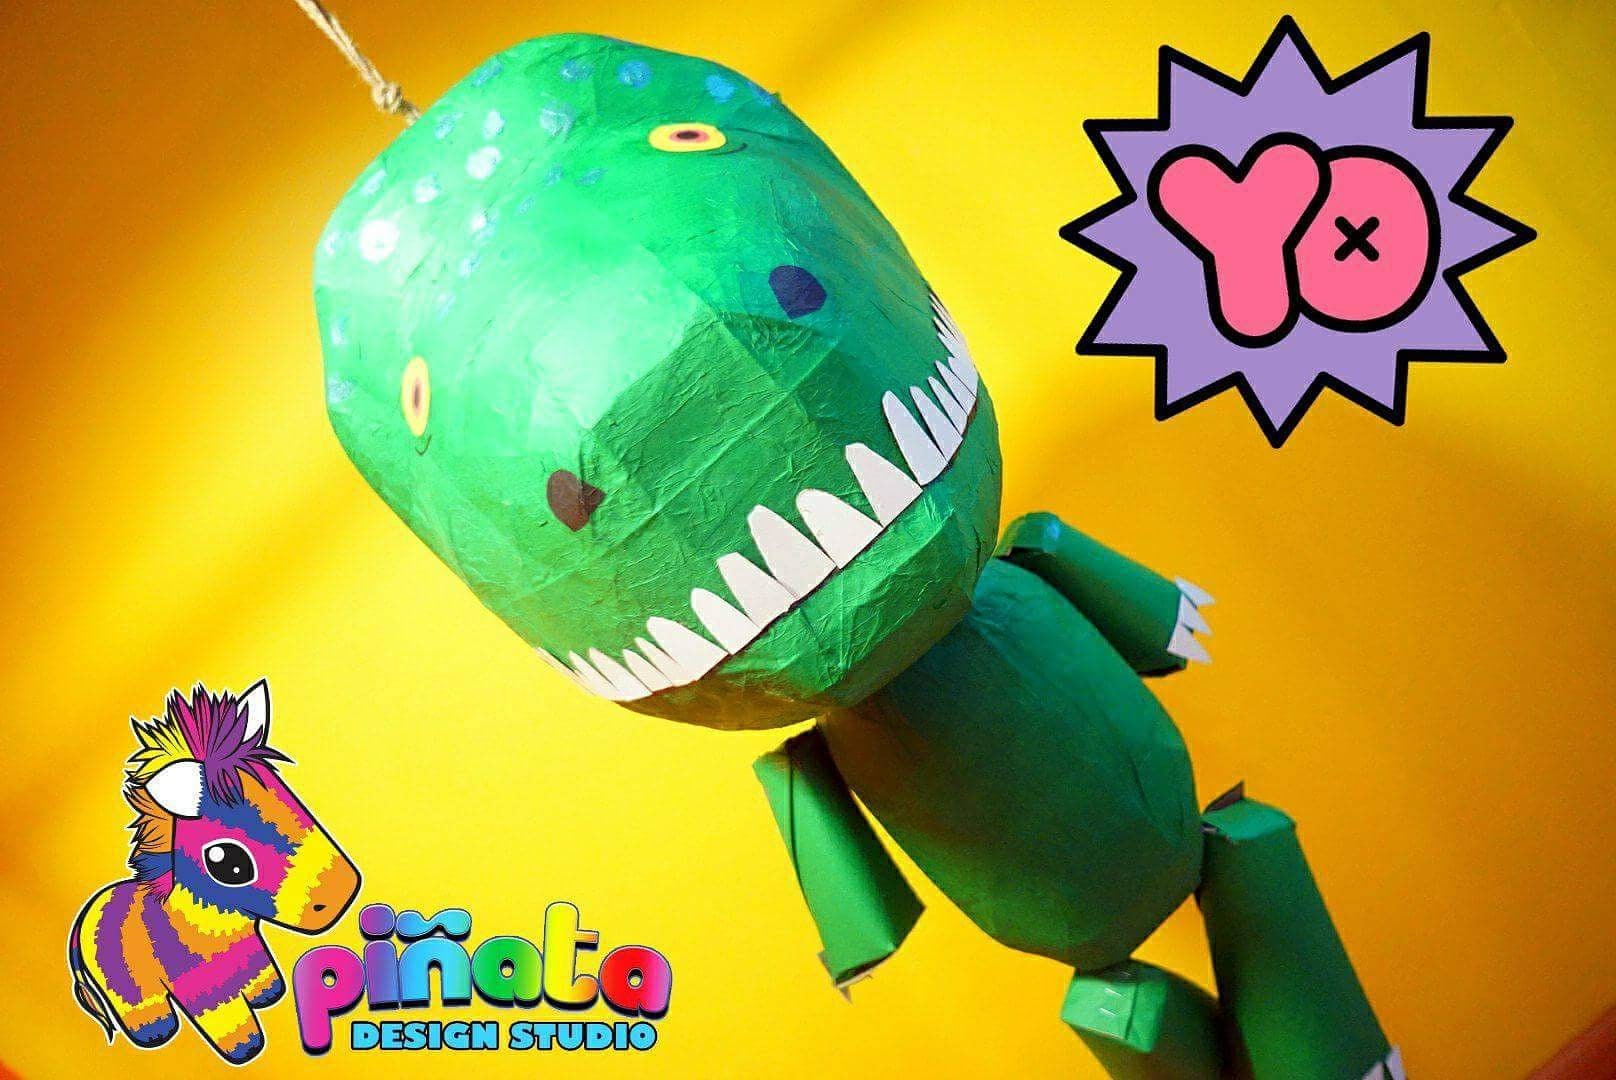 Dinosaur Pinata Pet Dino Fun Game Birthday Party Decoration Kids